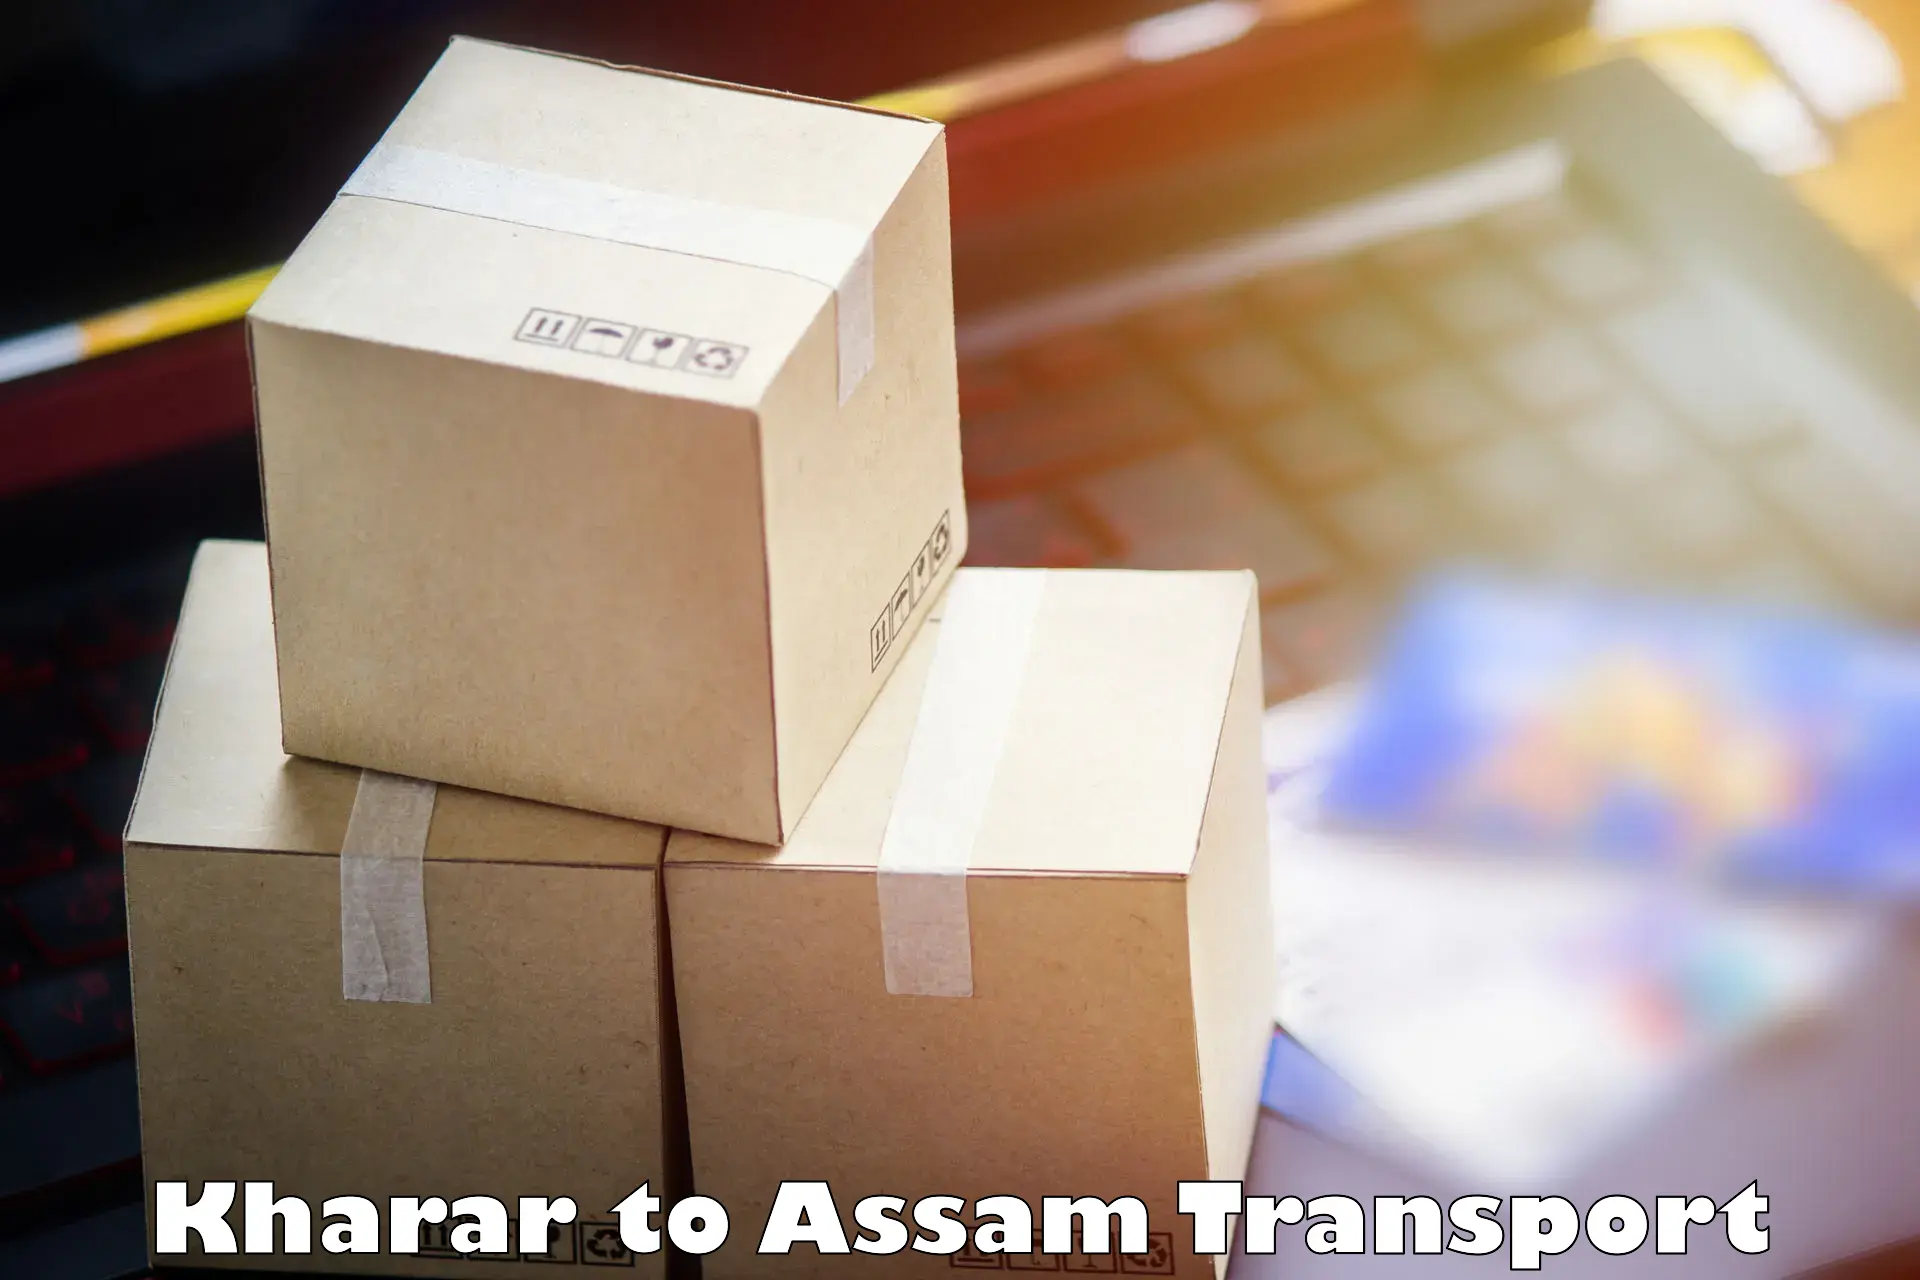 Cargo transport services Kharar to Moranhat